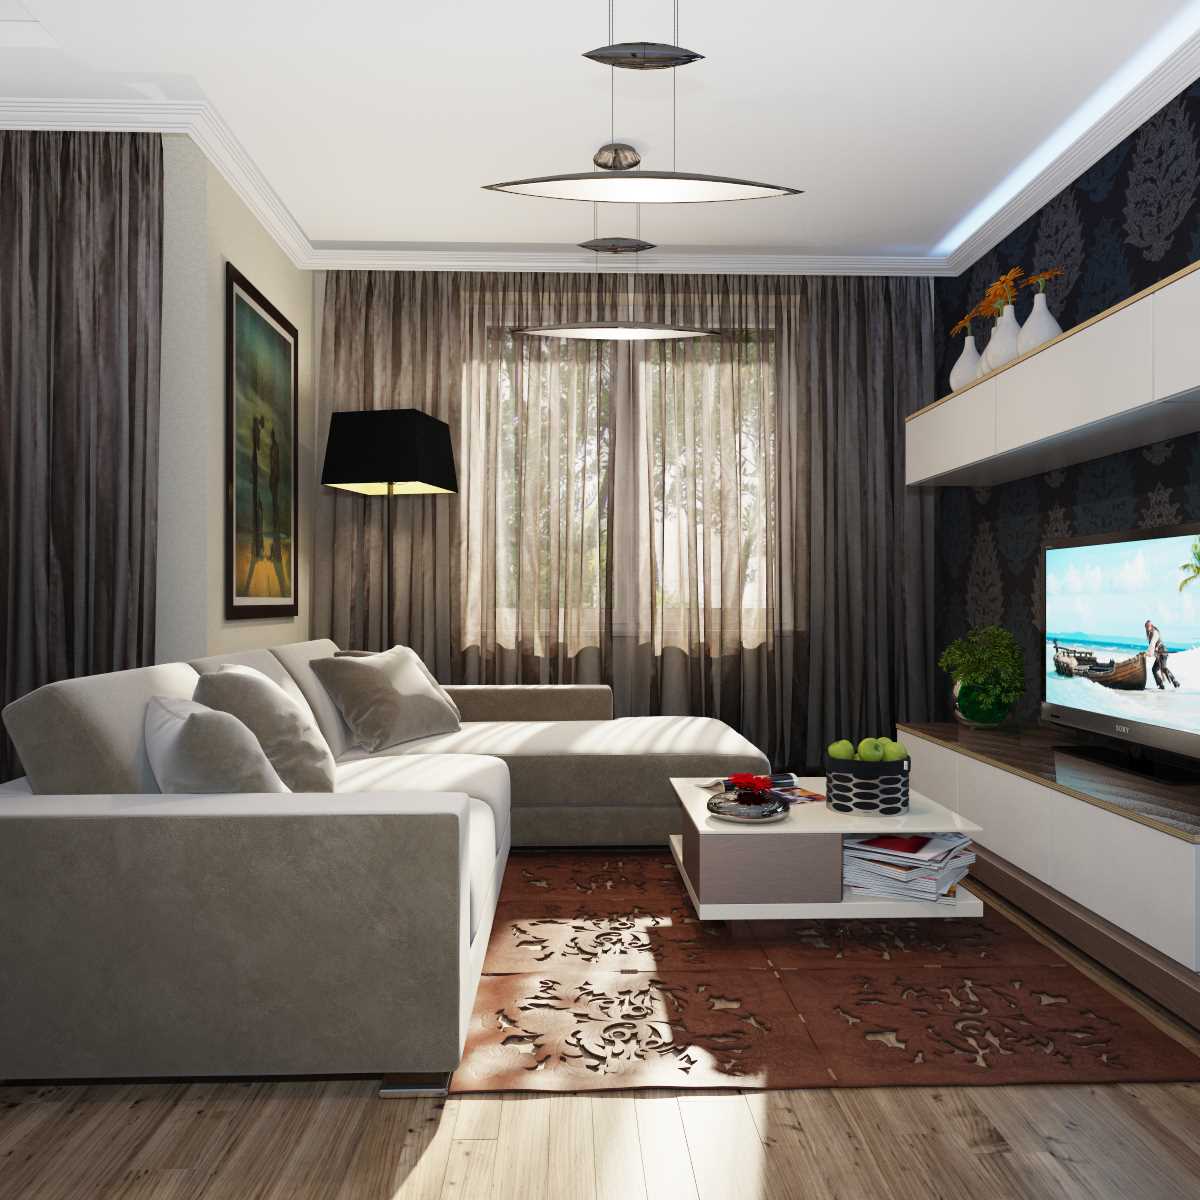 Un esempio di un luminoso soggiorno in stile 19-20 mq